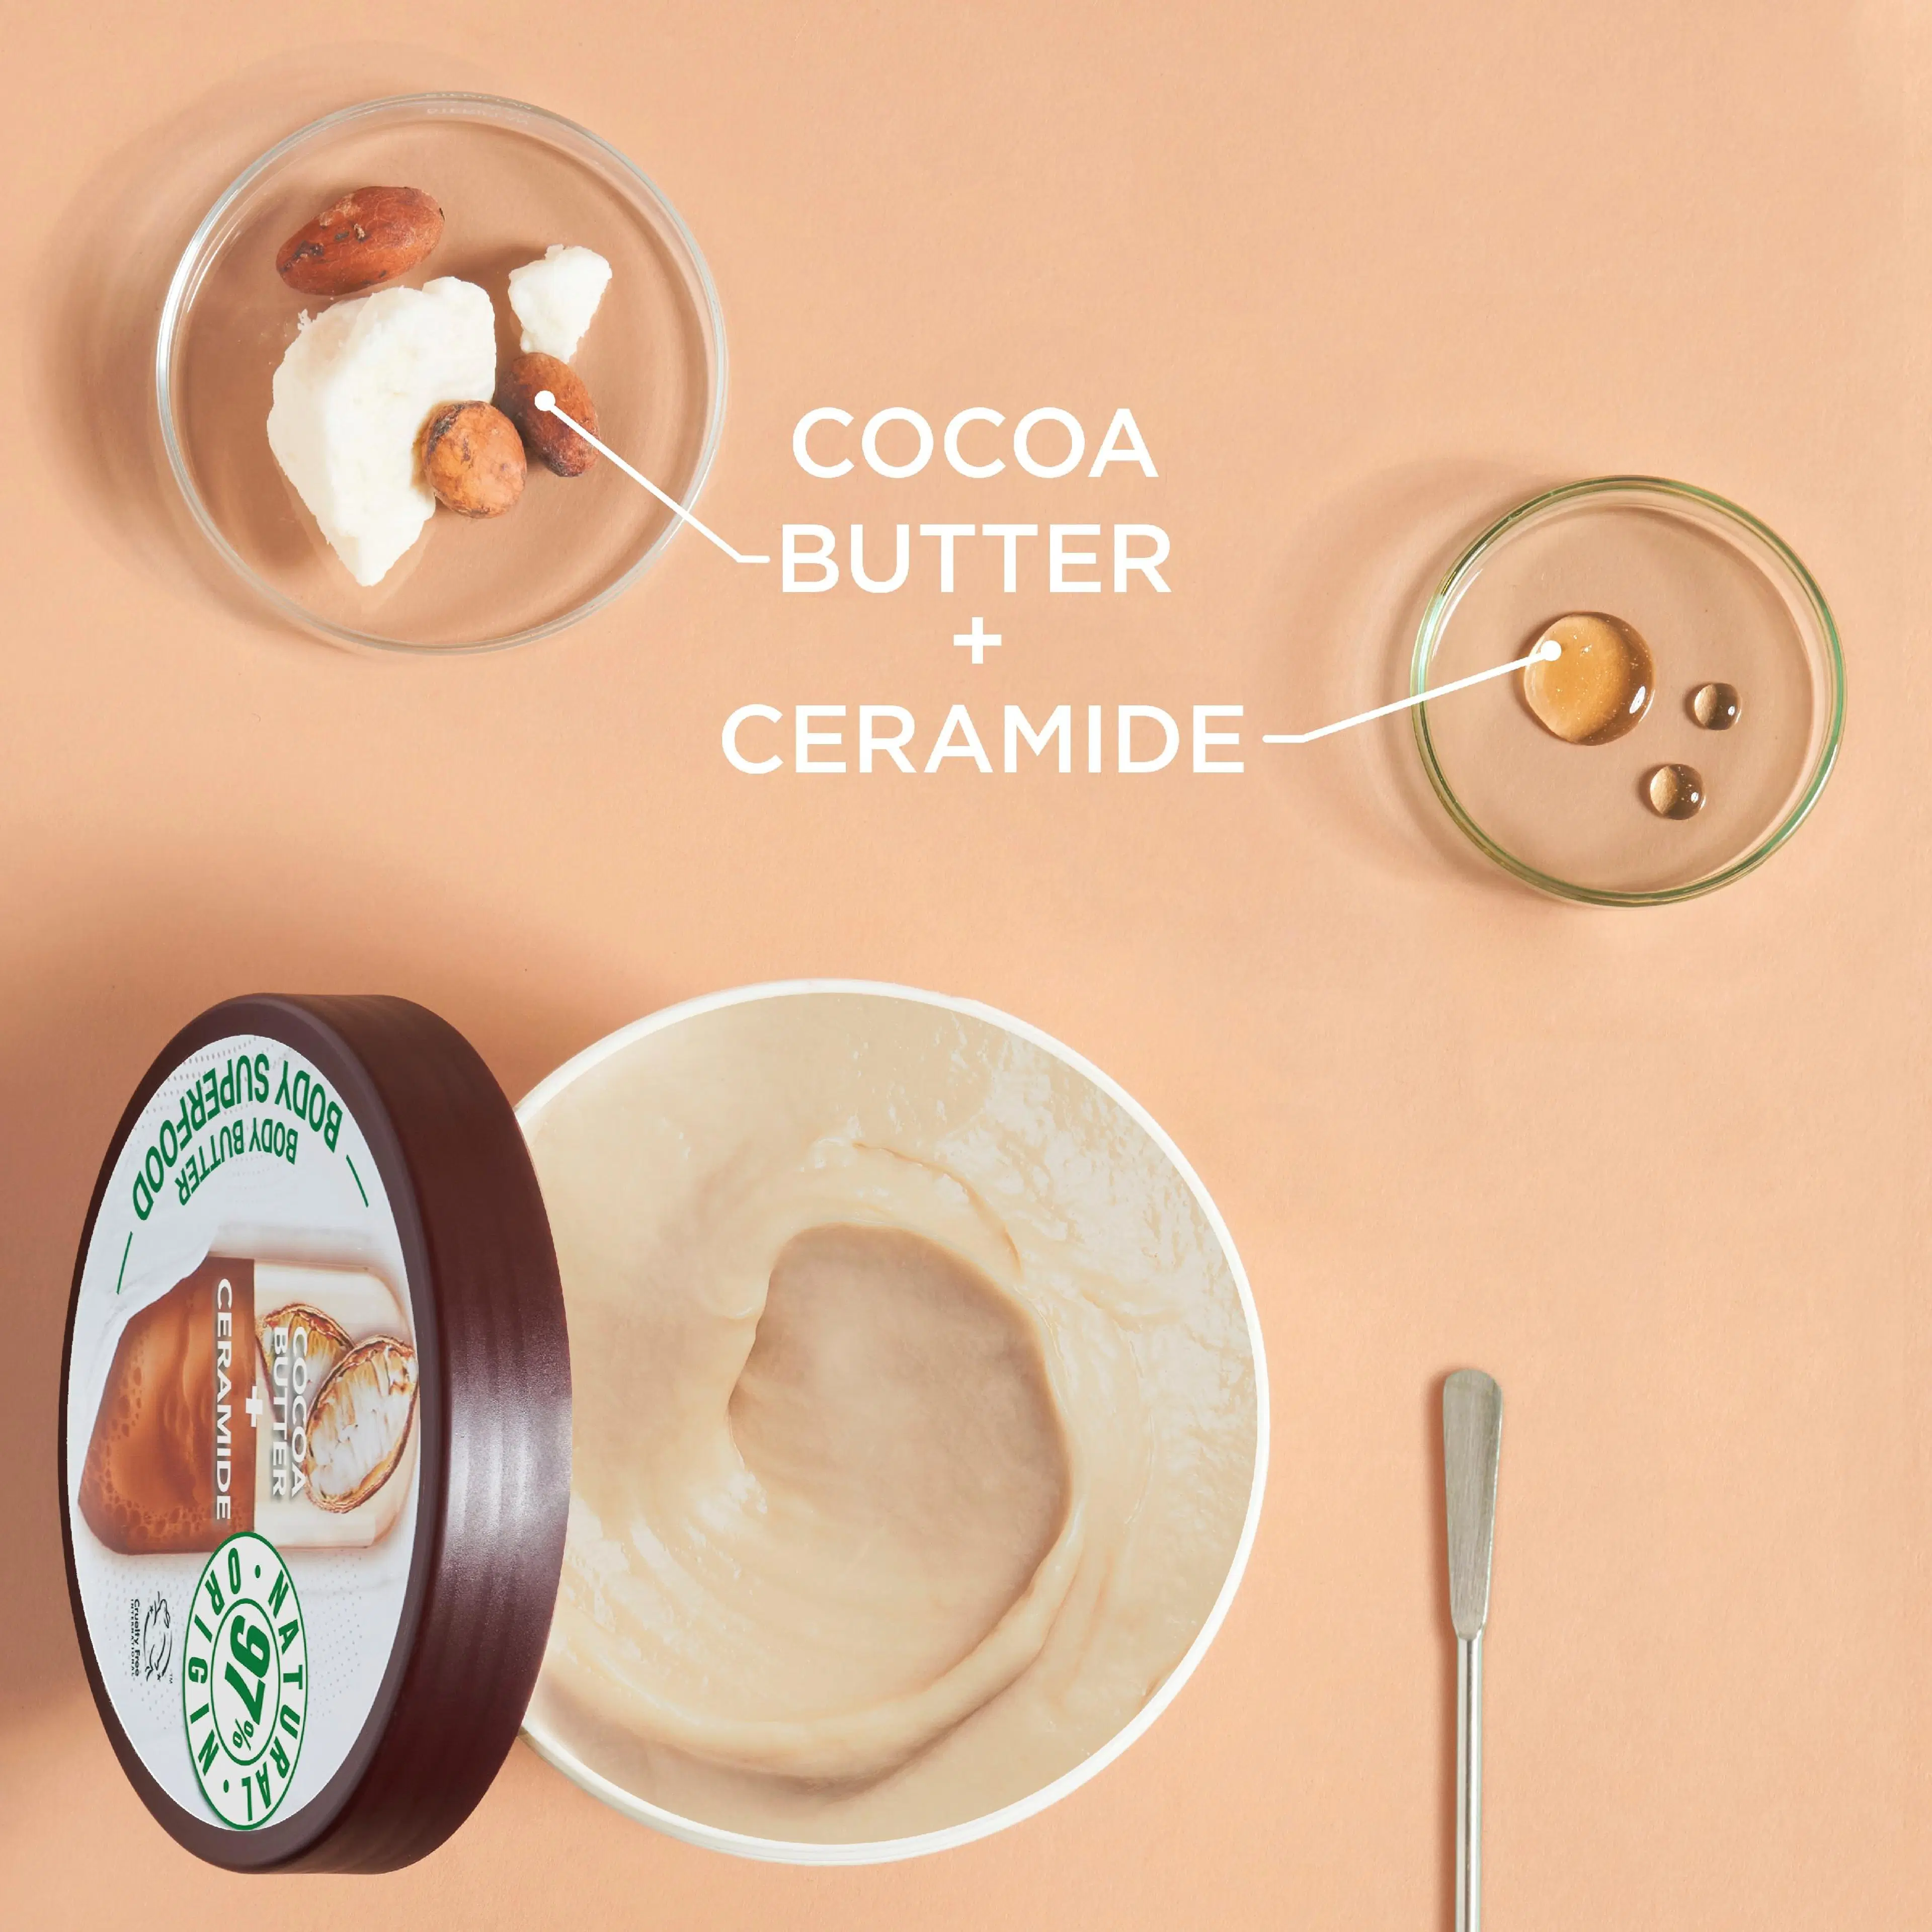 Garnier Body Superfood Cocoa vartalovoide erittäin kuivalle iholle 380ml